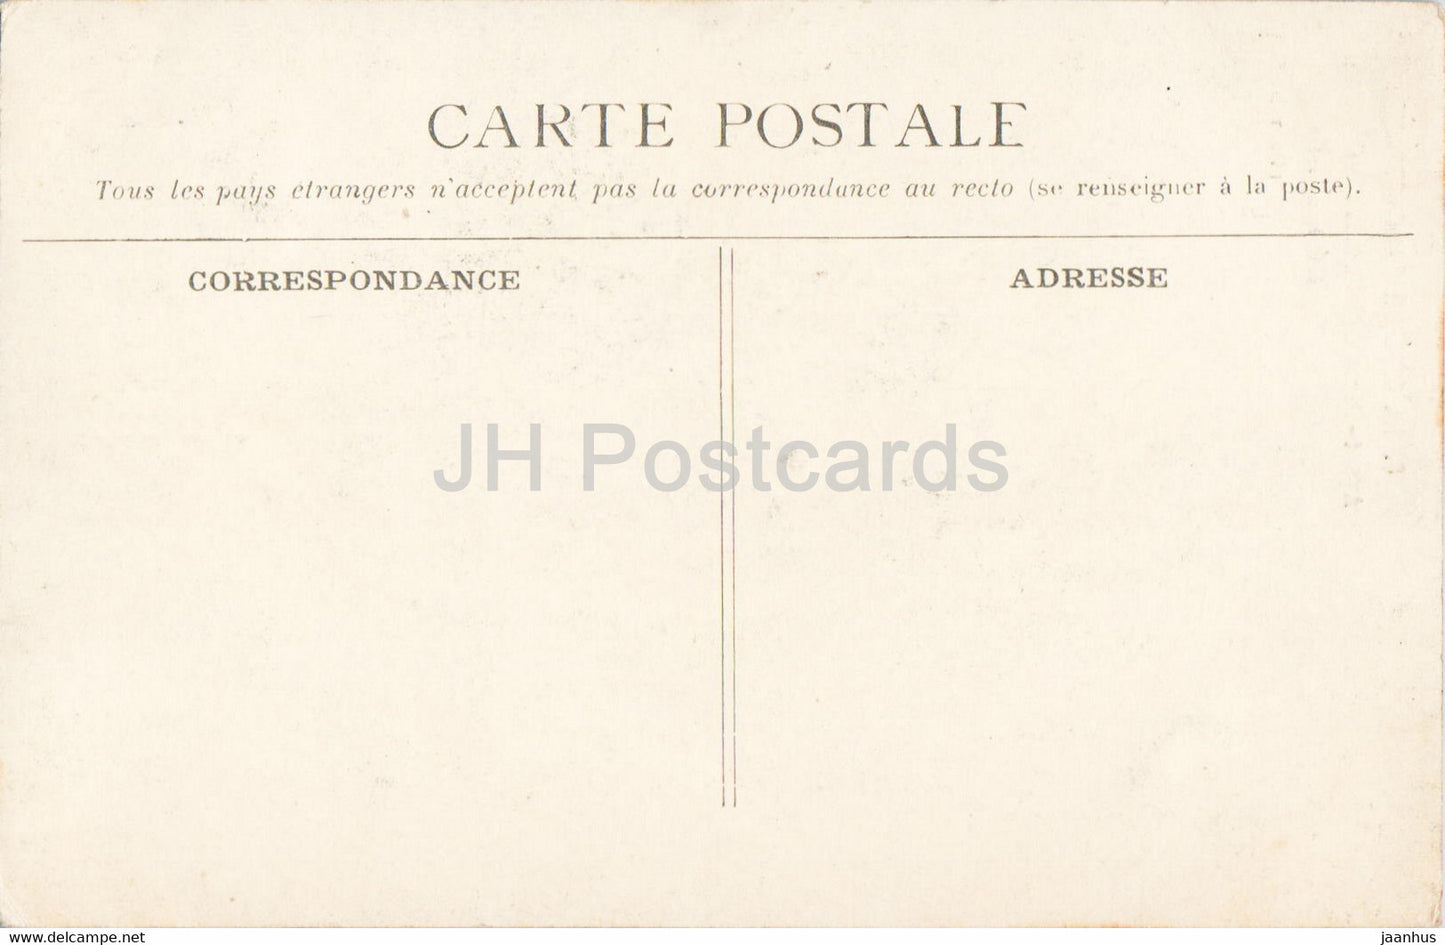 La Cite de Carcassonne - Avant Porte et Defenses du Chateau - 8 - Schloss - alte Postkarte - Frankreich - unbenutzt